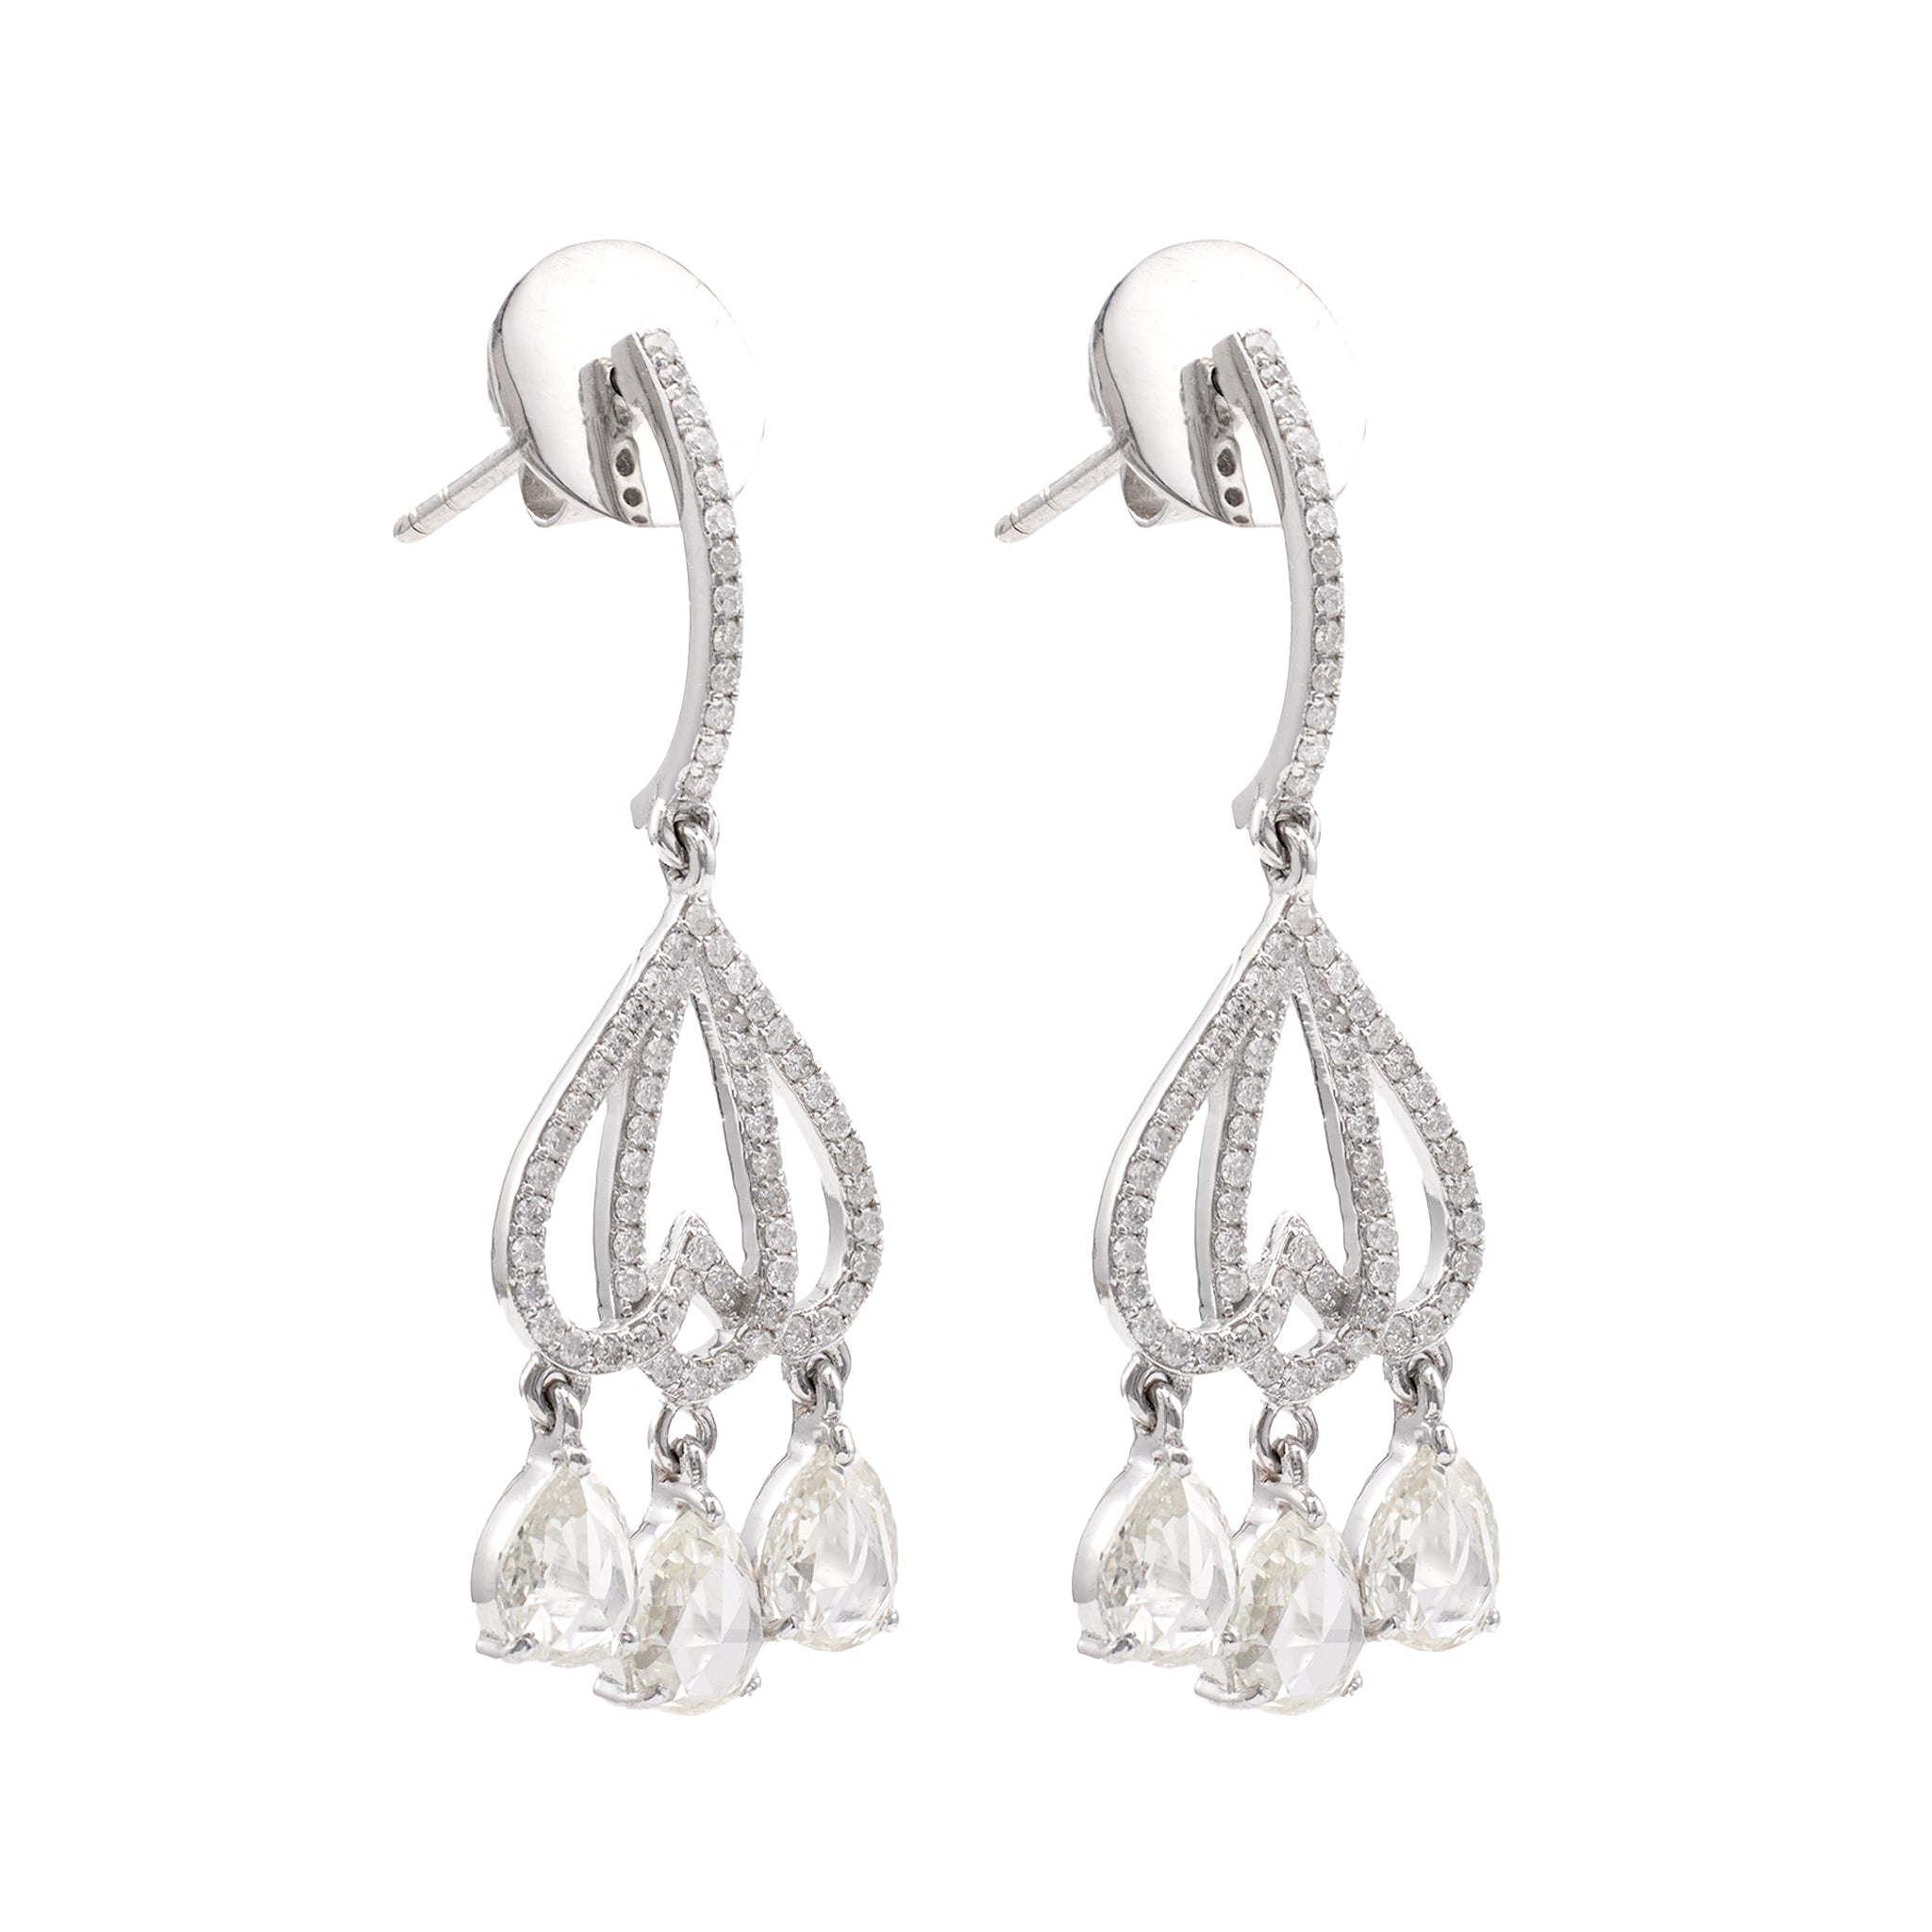 Pair of Rose Cut Diamond Platinum Dangle Earrings Earrings Jack Weir & Sons   